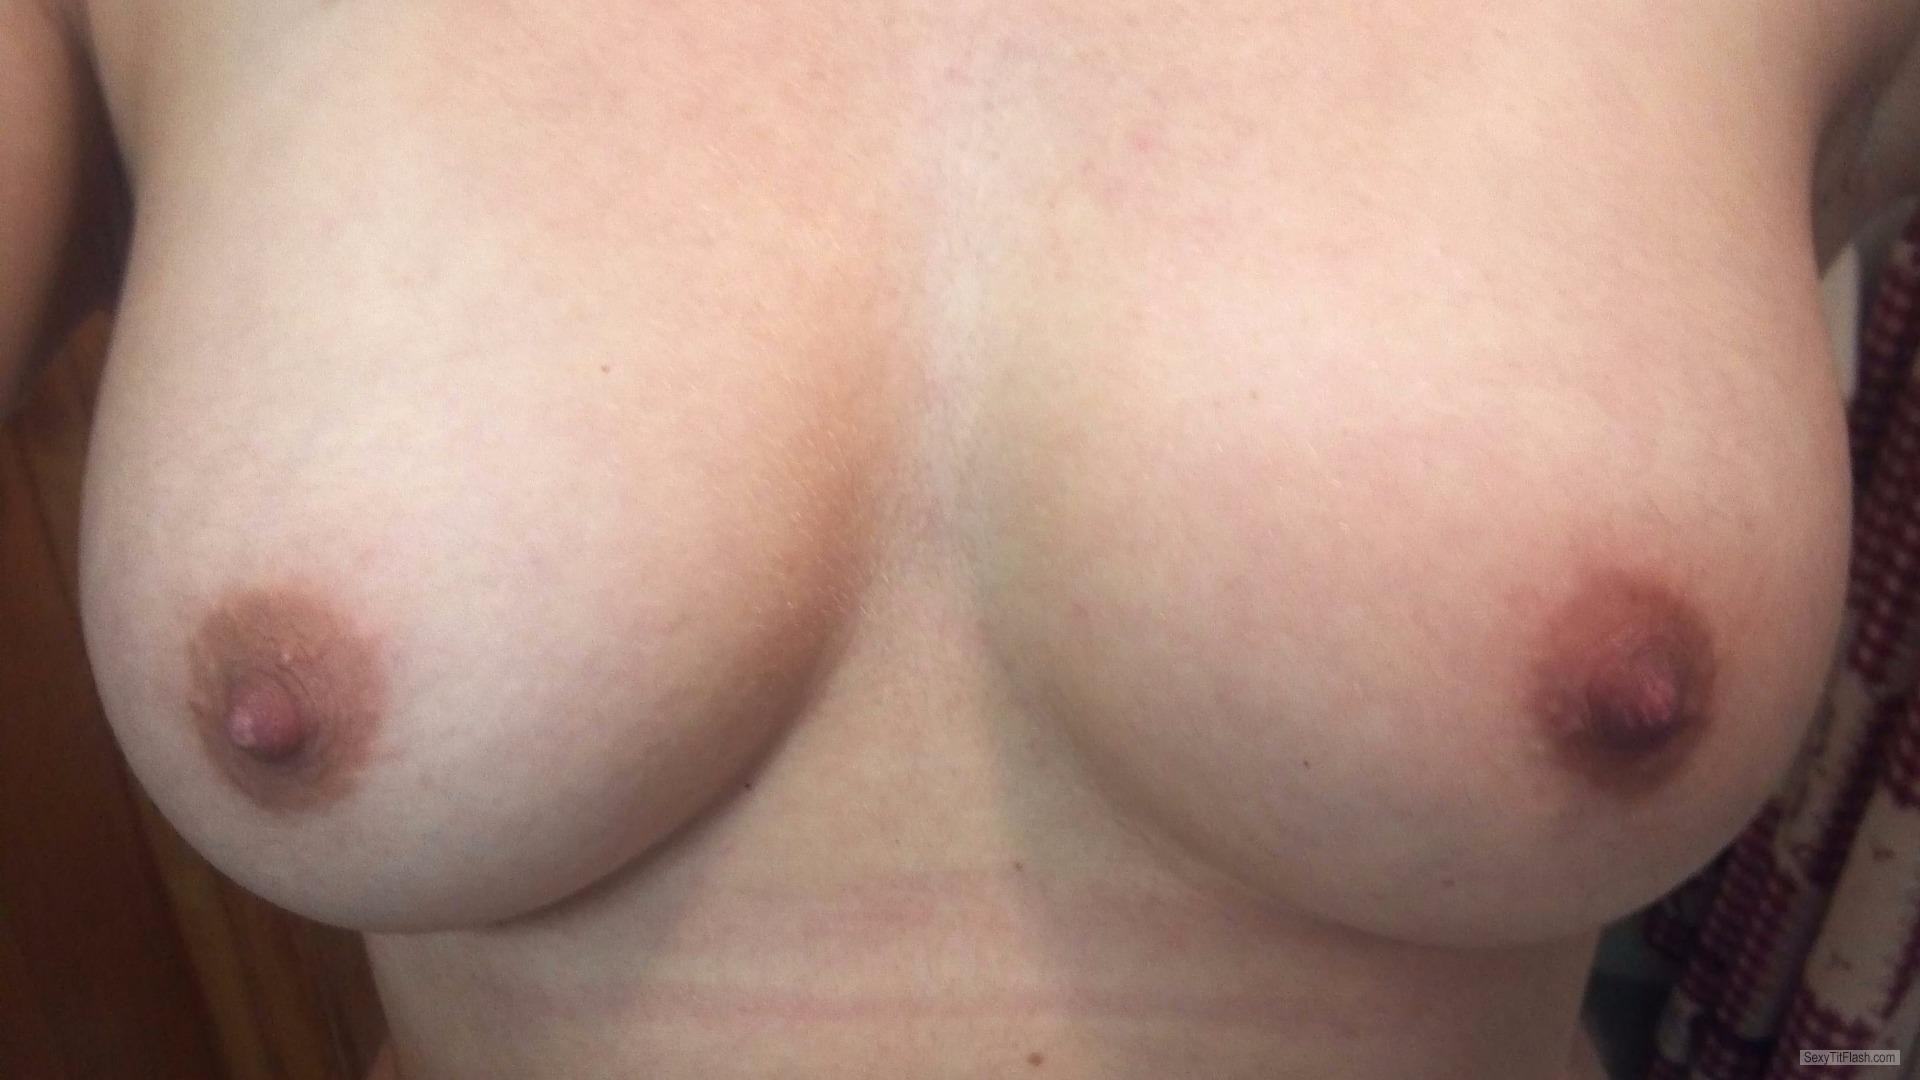 Medium Tits Of My Ex-Girlfriend Selfie by Shep2015